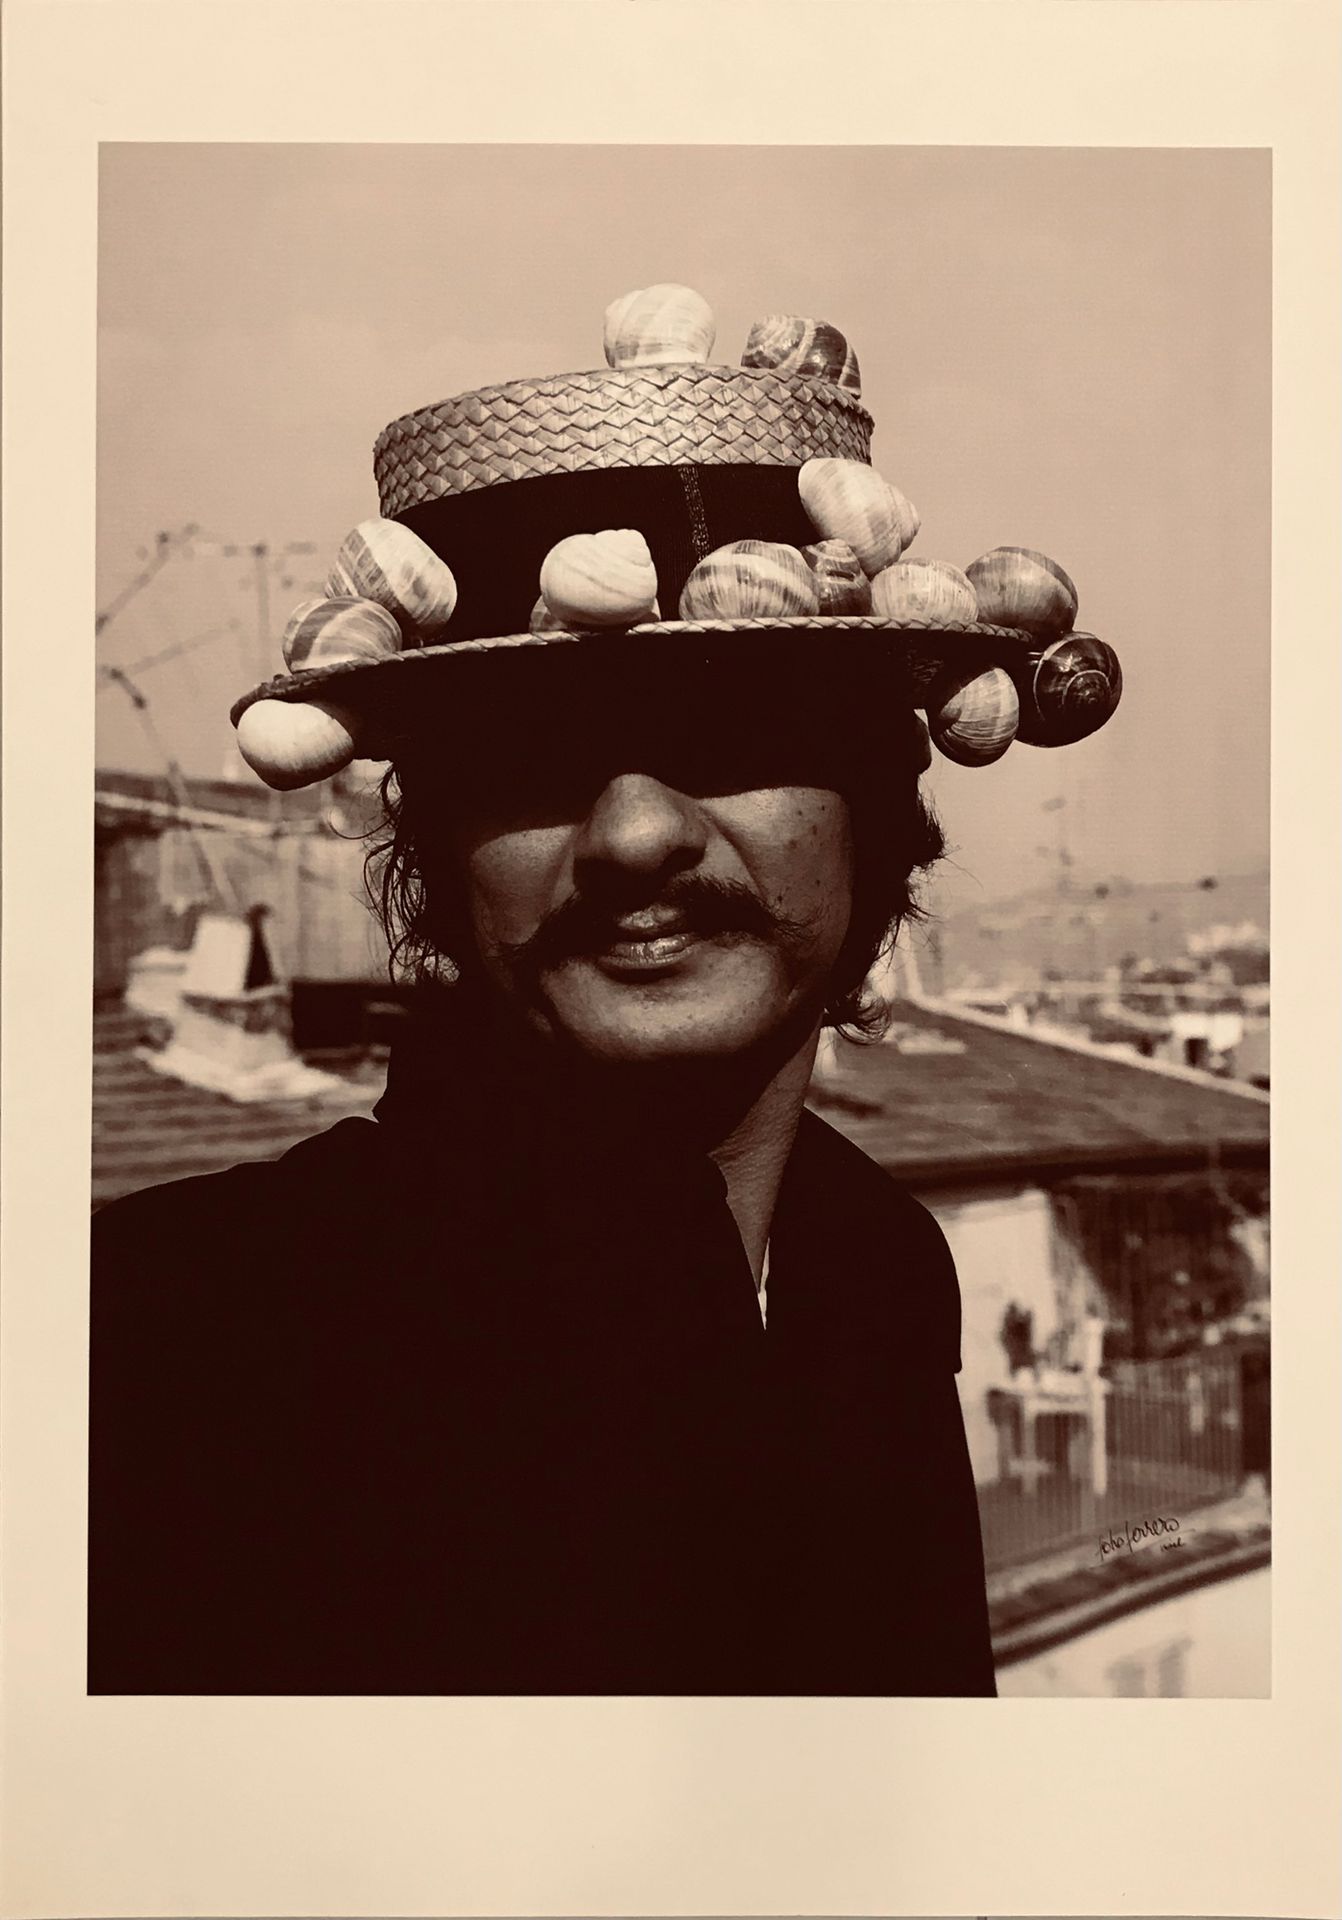 [GILLI] Jean FERRERO Porträt von Claude Gilli mit Schneckenhut, um 1970
Fotograf&hellip;